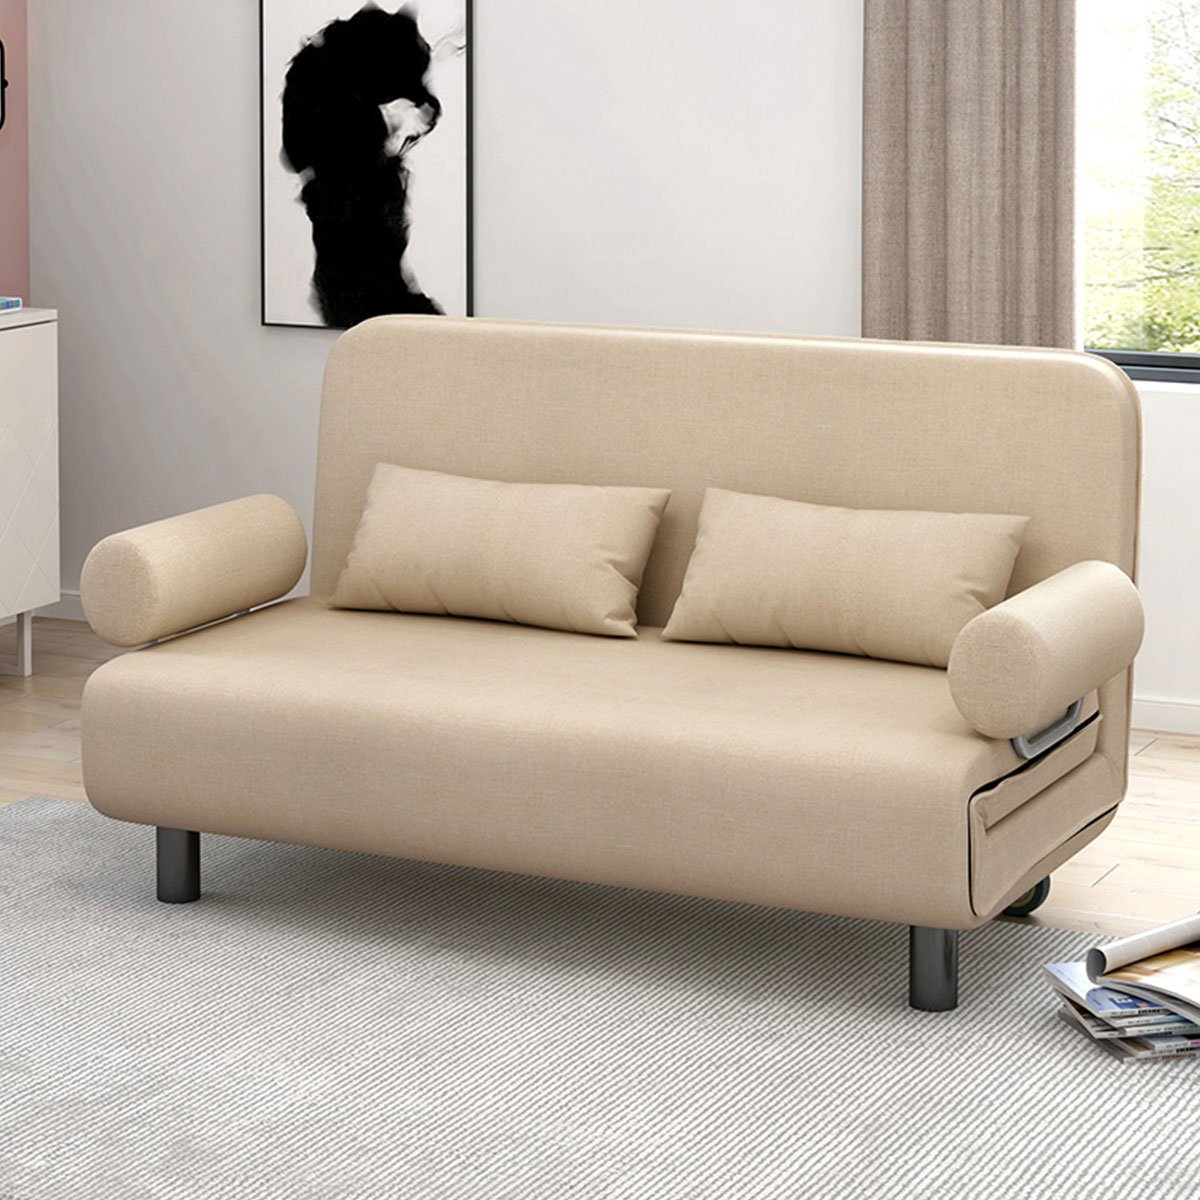 多功能可折叠沙发床两用客厅简约现代小户型沙发卧室单人